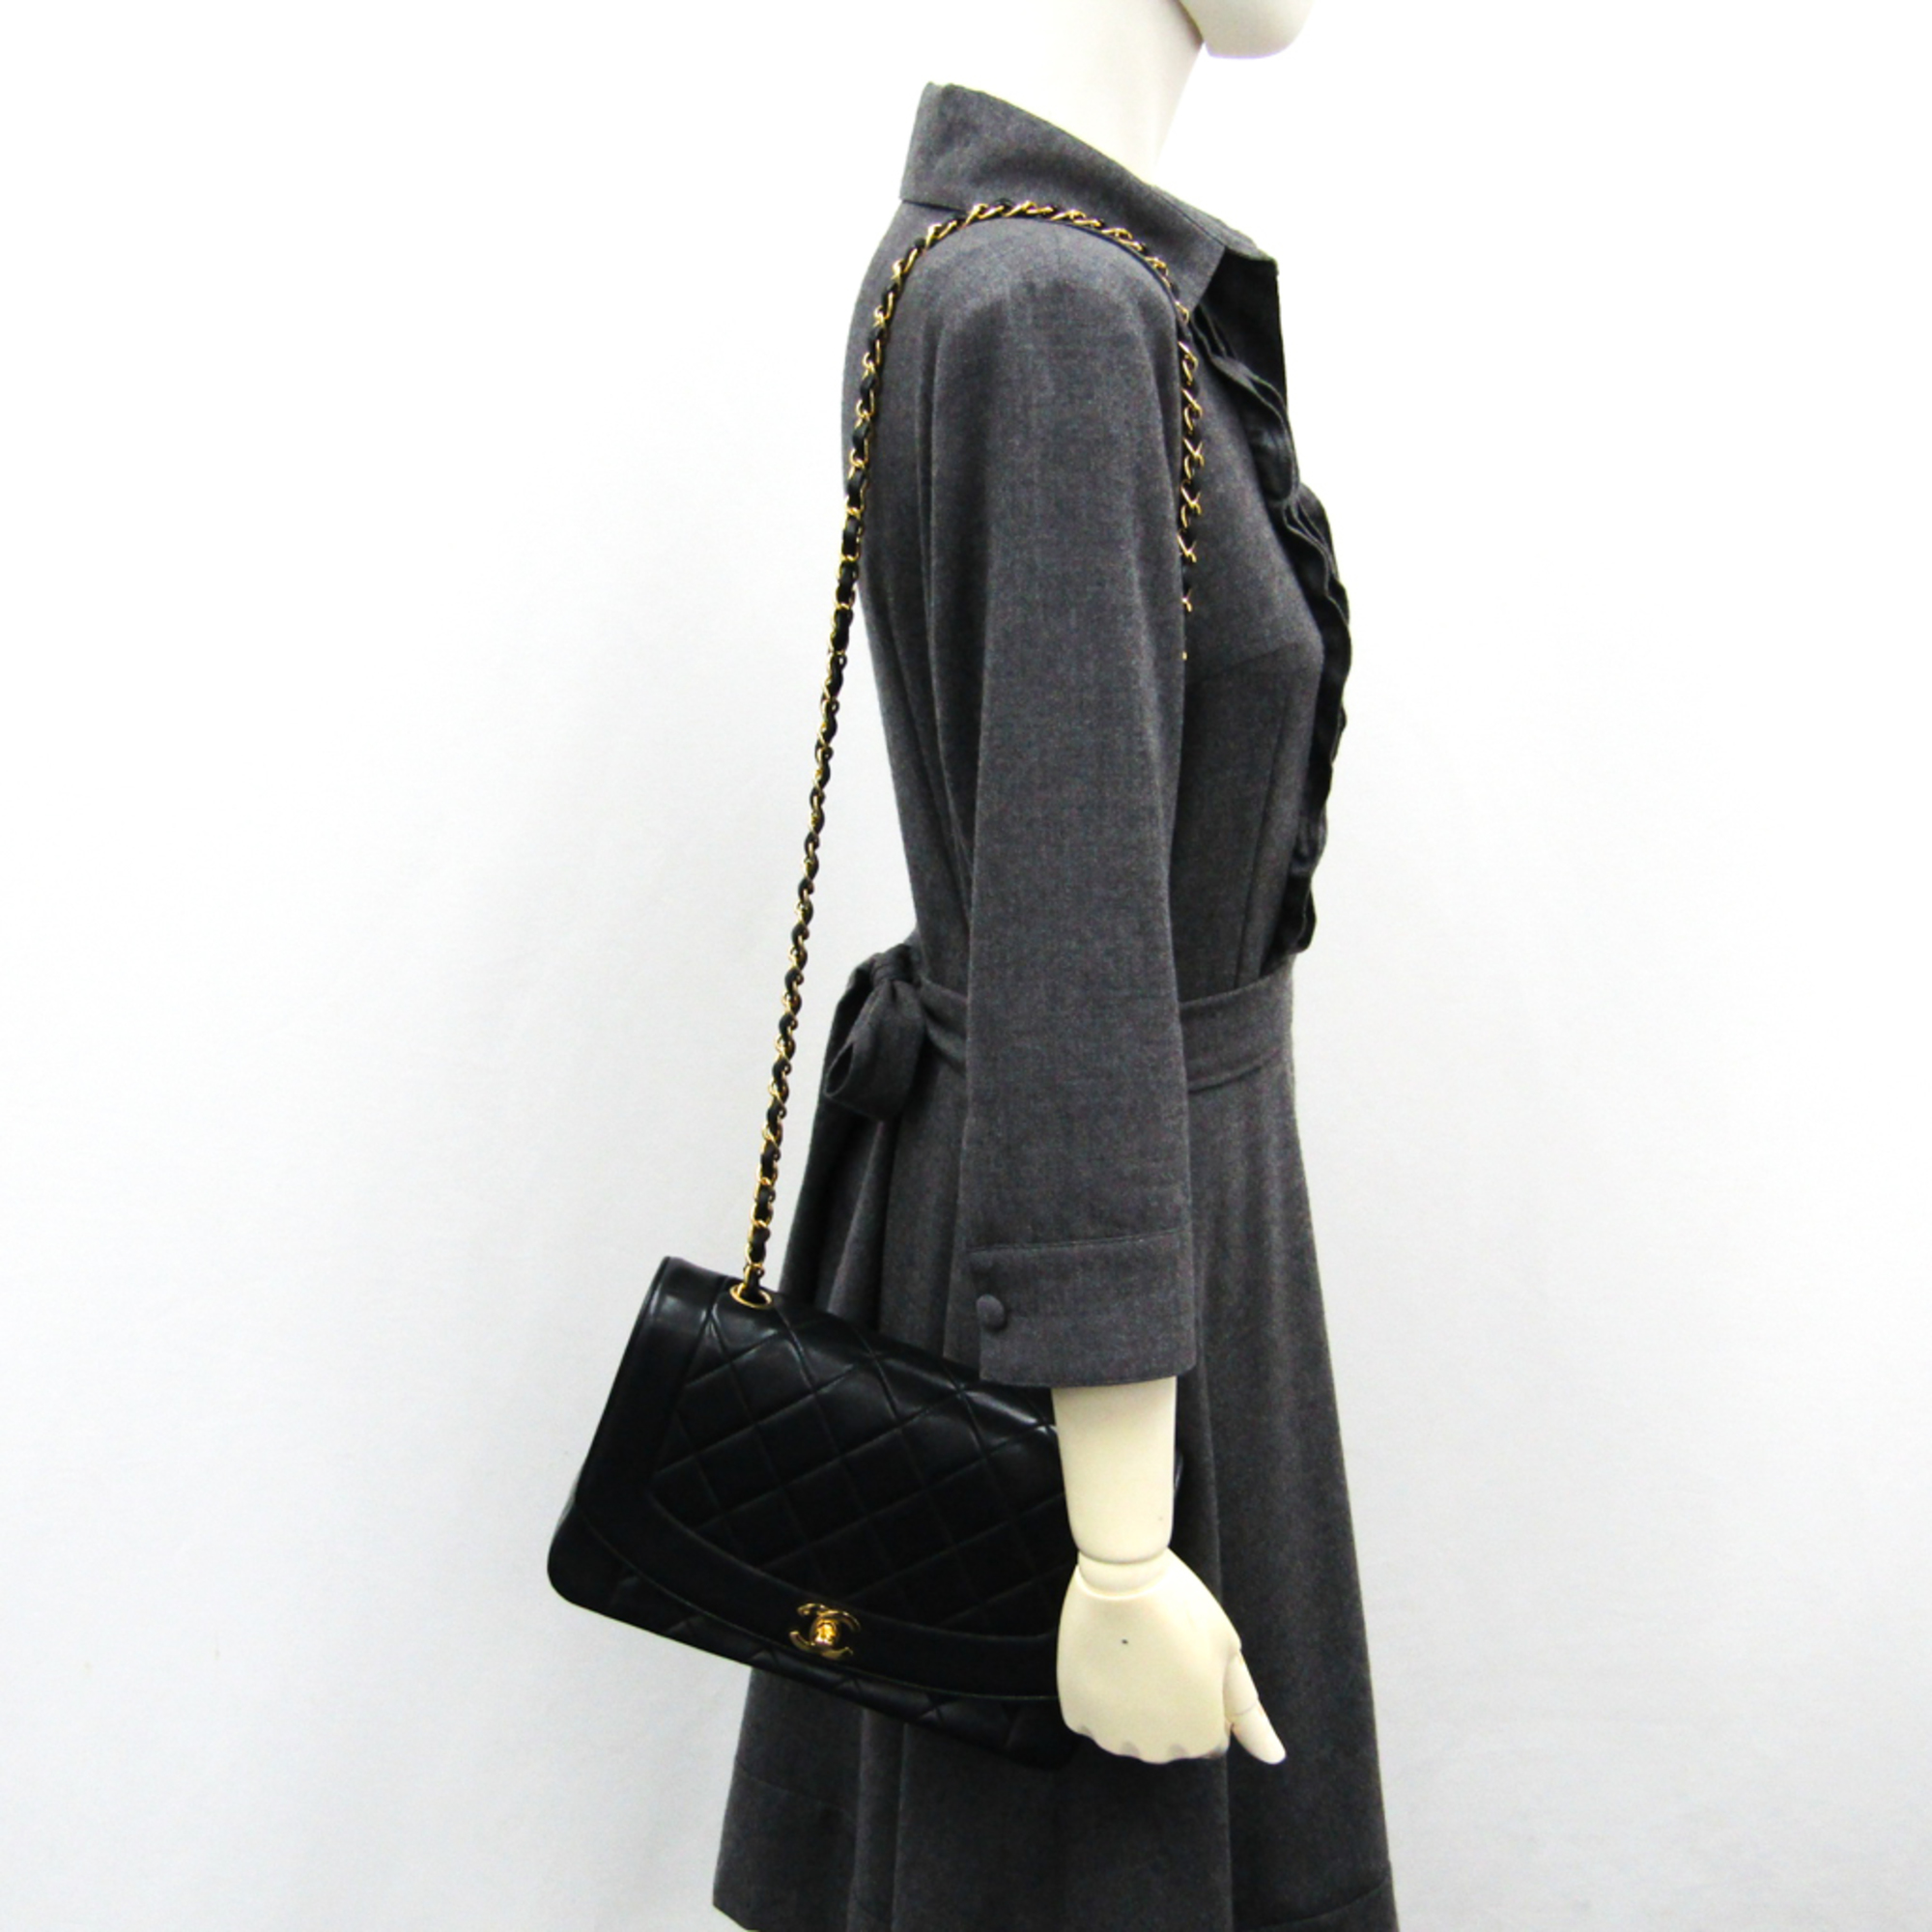 Chanel Matelasse Diana Women's Leather Shoulder Bag Black